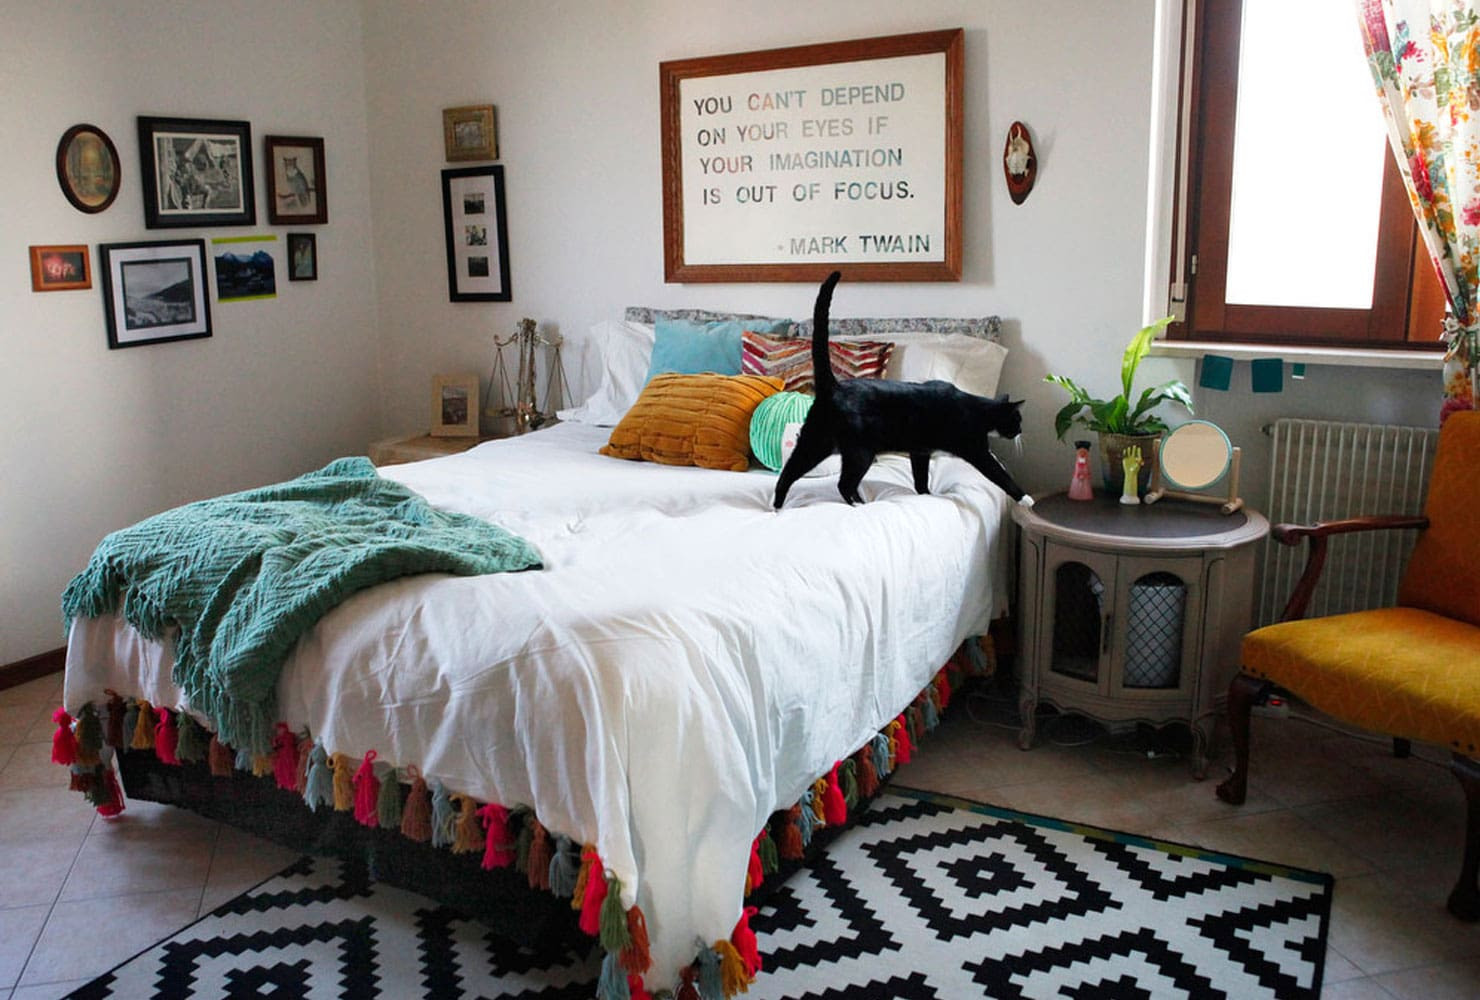 Bedroom DIY Decor
 24 DIY Bedroom Decor Ideas To Inspire You With Printables